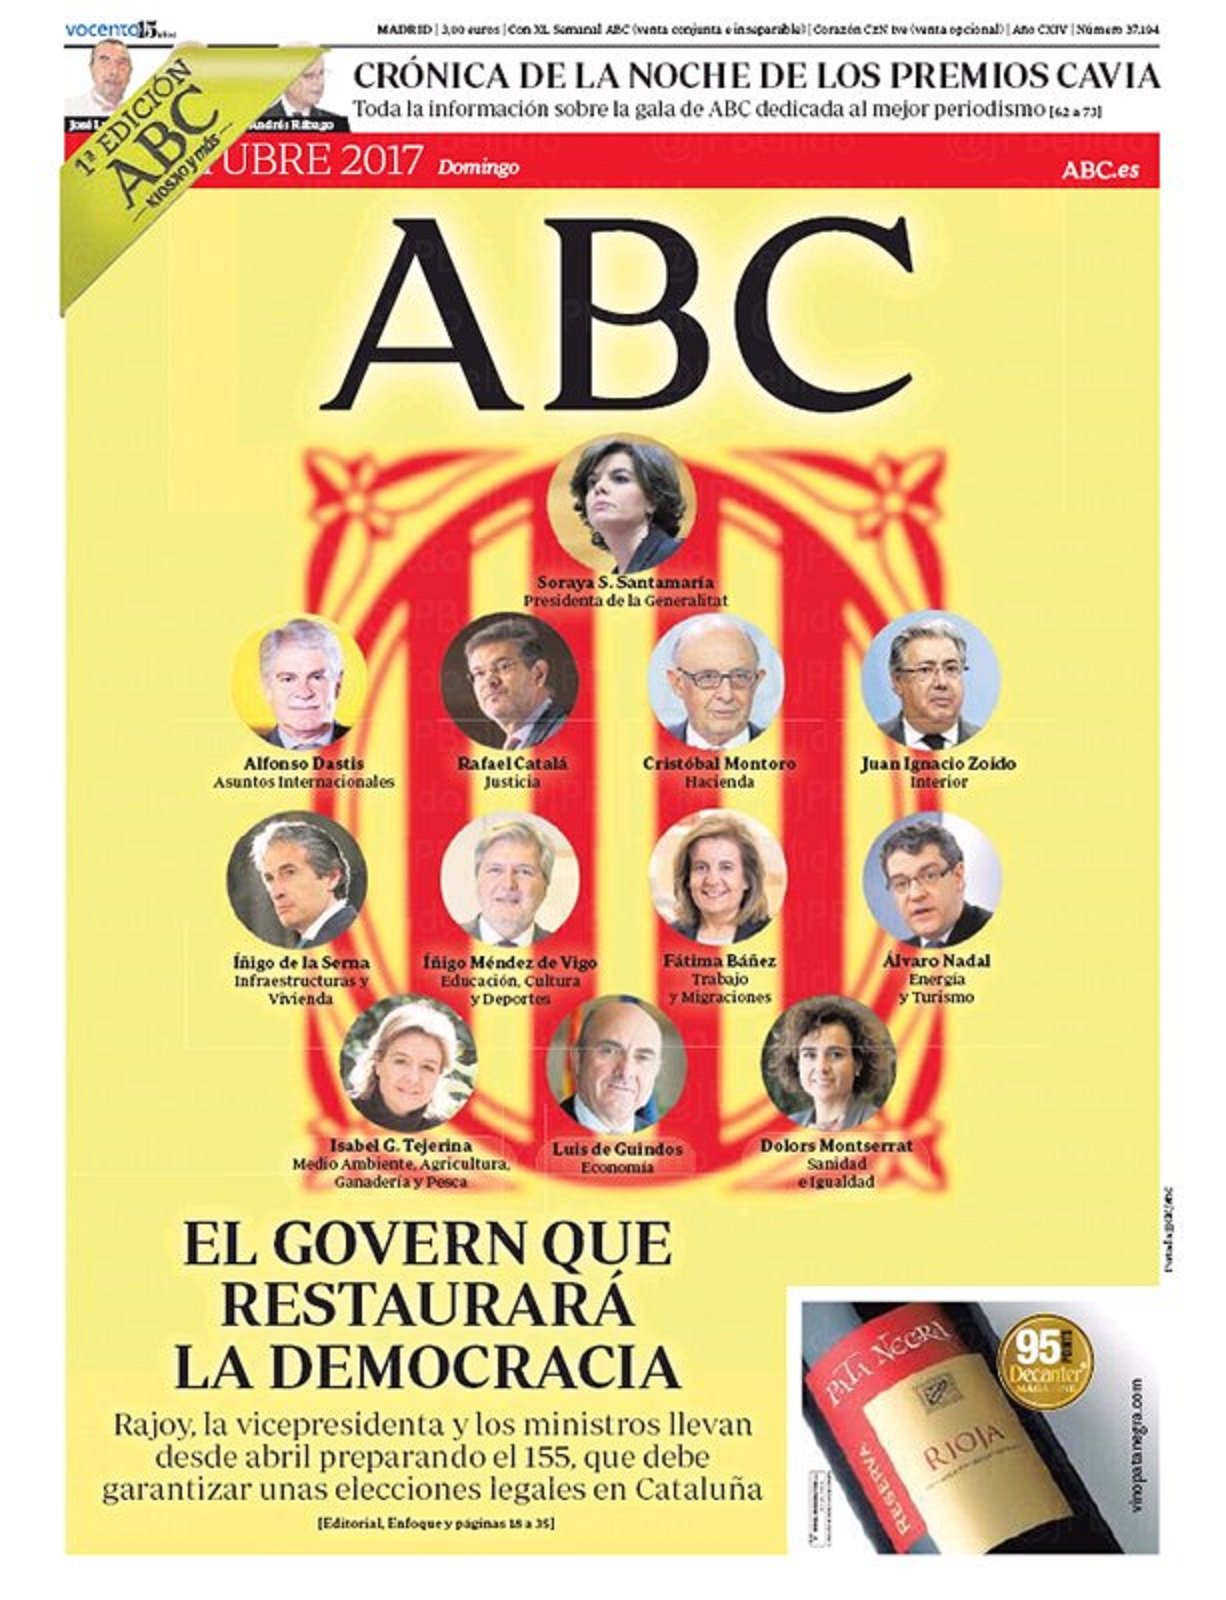 L'exultant portada d''ABC' que fa Santamaría 'presidenta de la Generalitat'